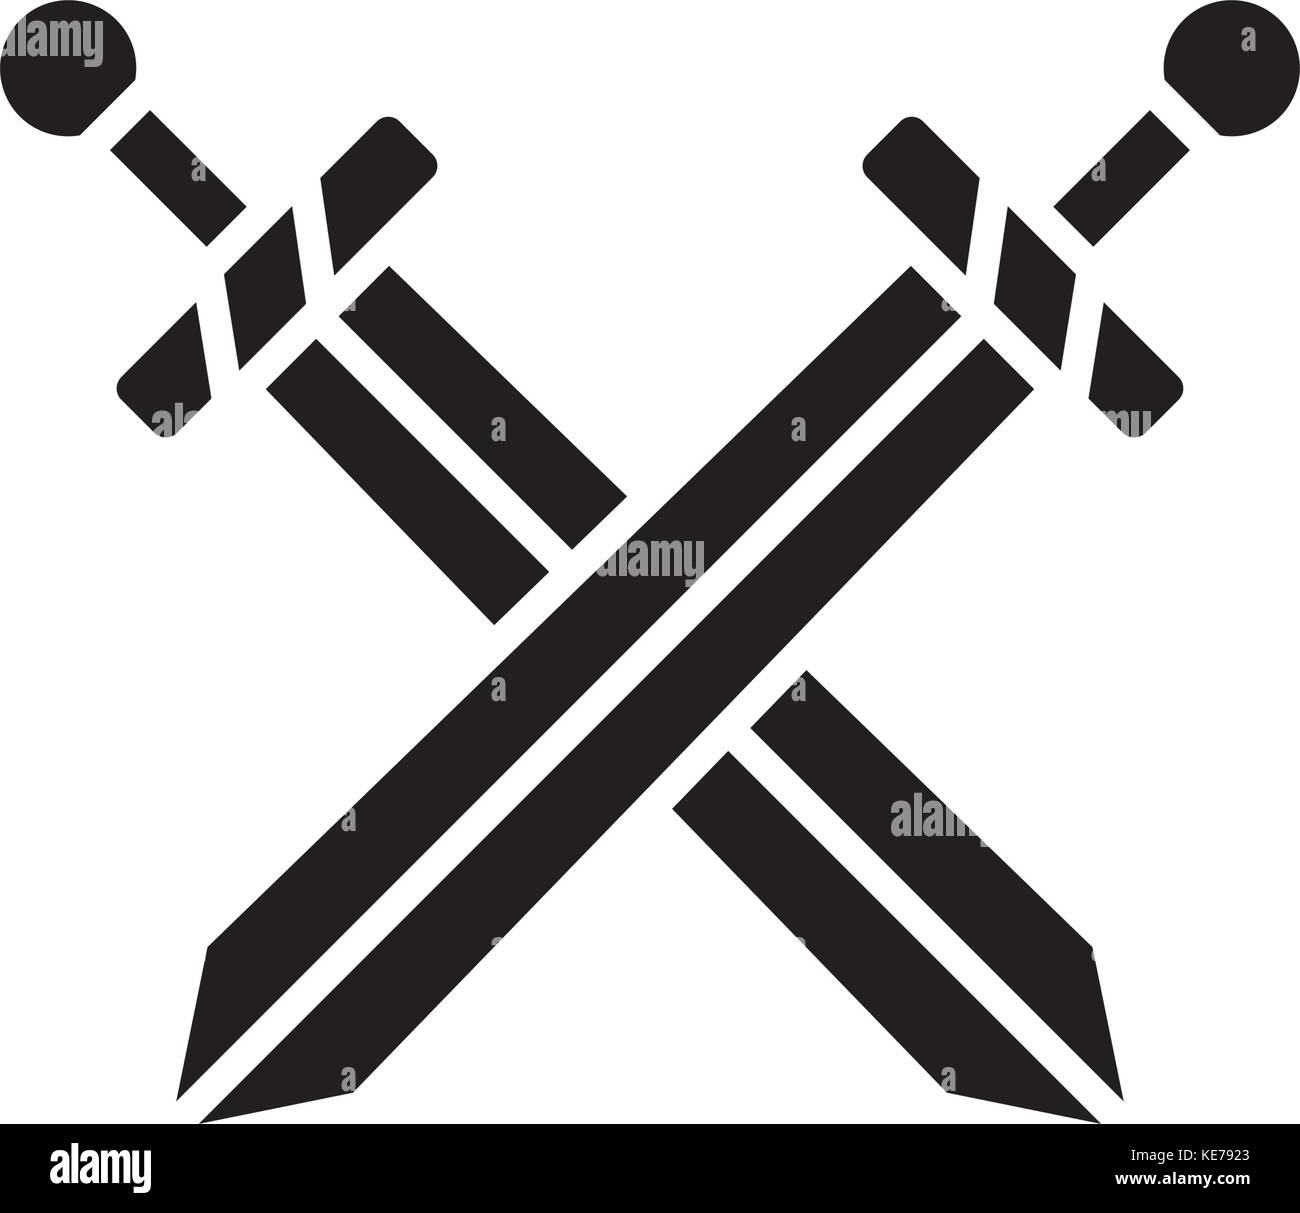 Zwei Schwerter Symbol, Vector Illustration, schwarze Zeichen auf isolierten  Hintergrund Stock-Vektorgrafik - Alamy